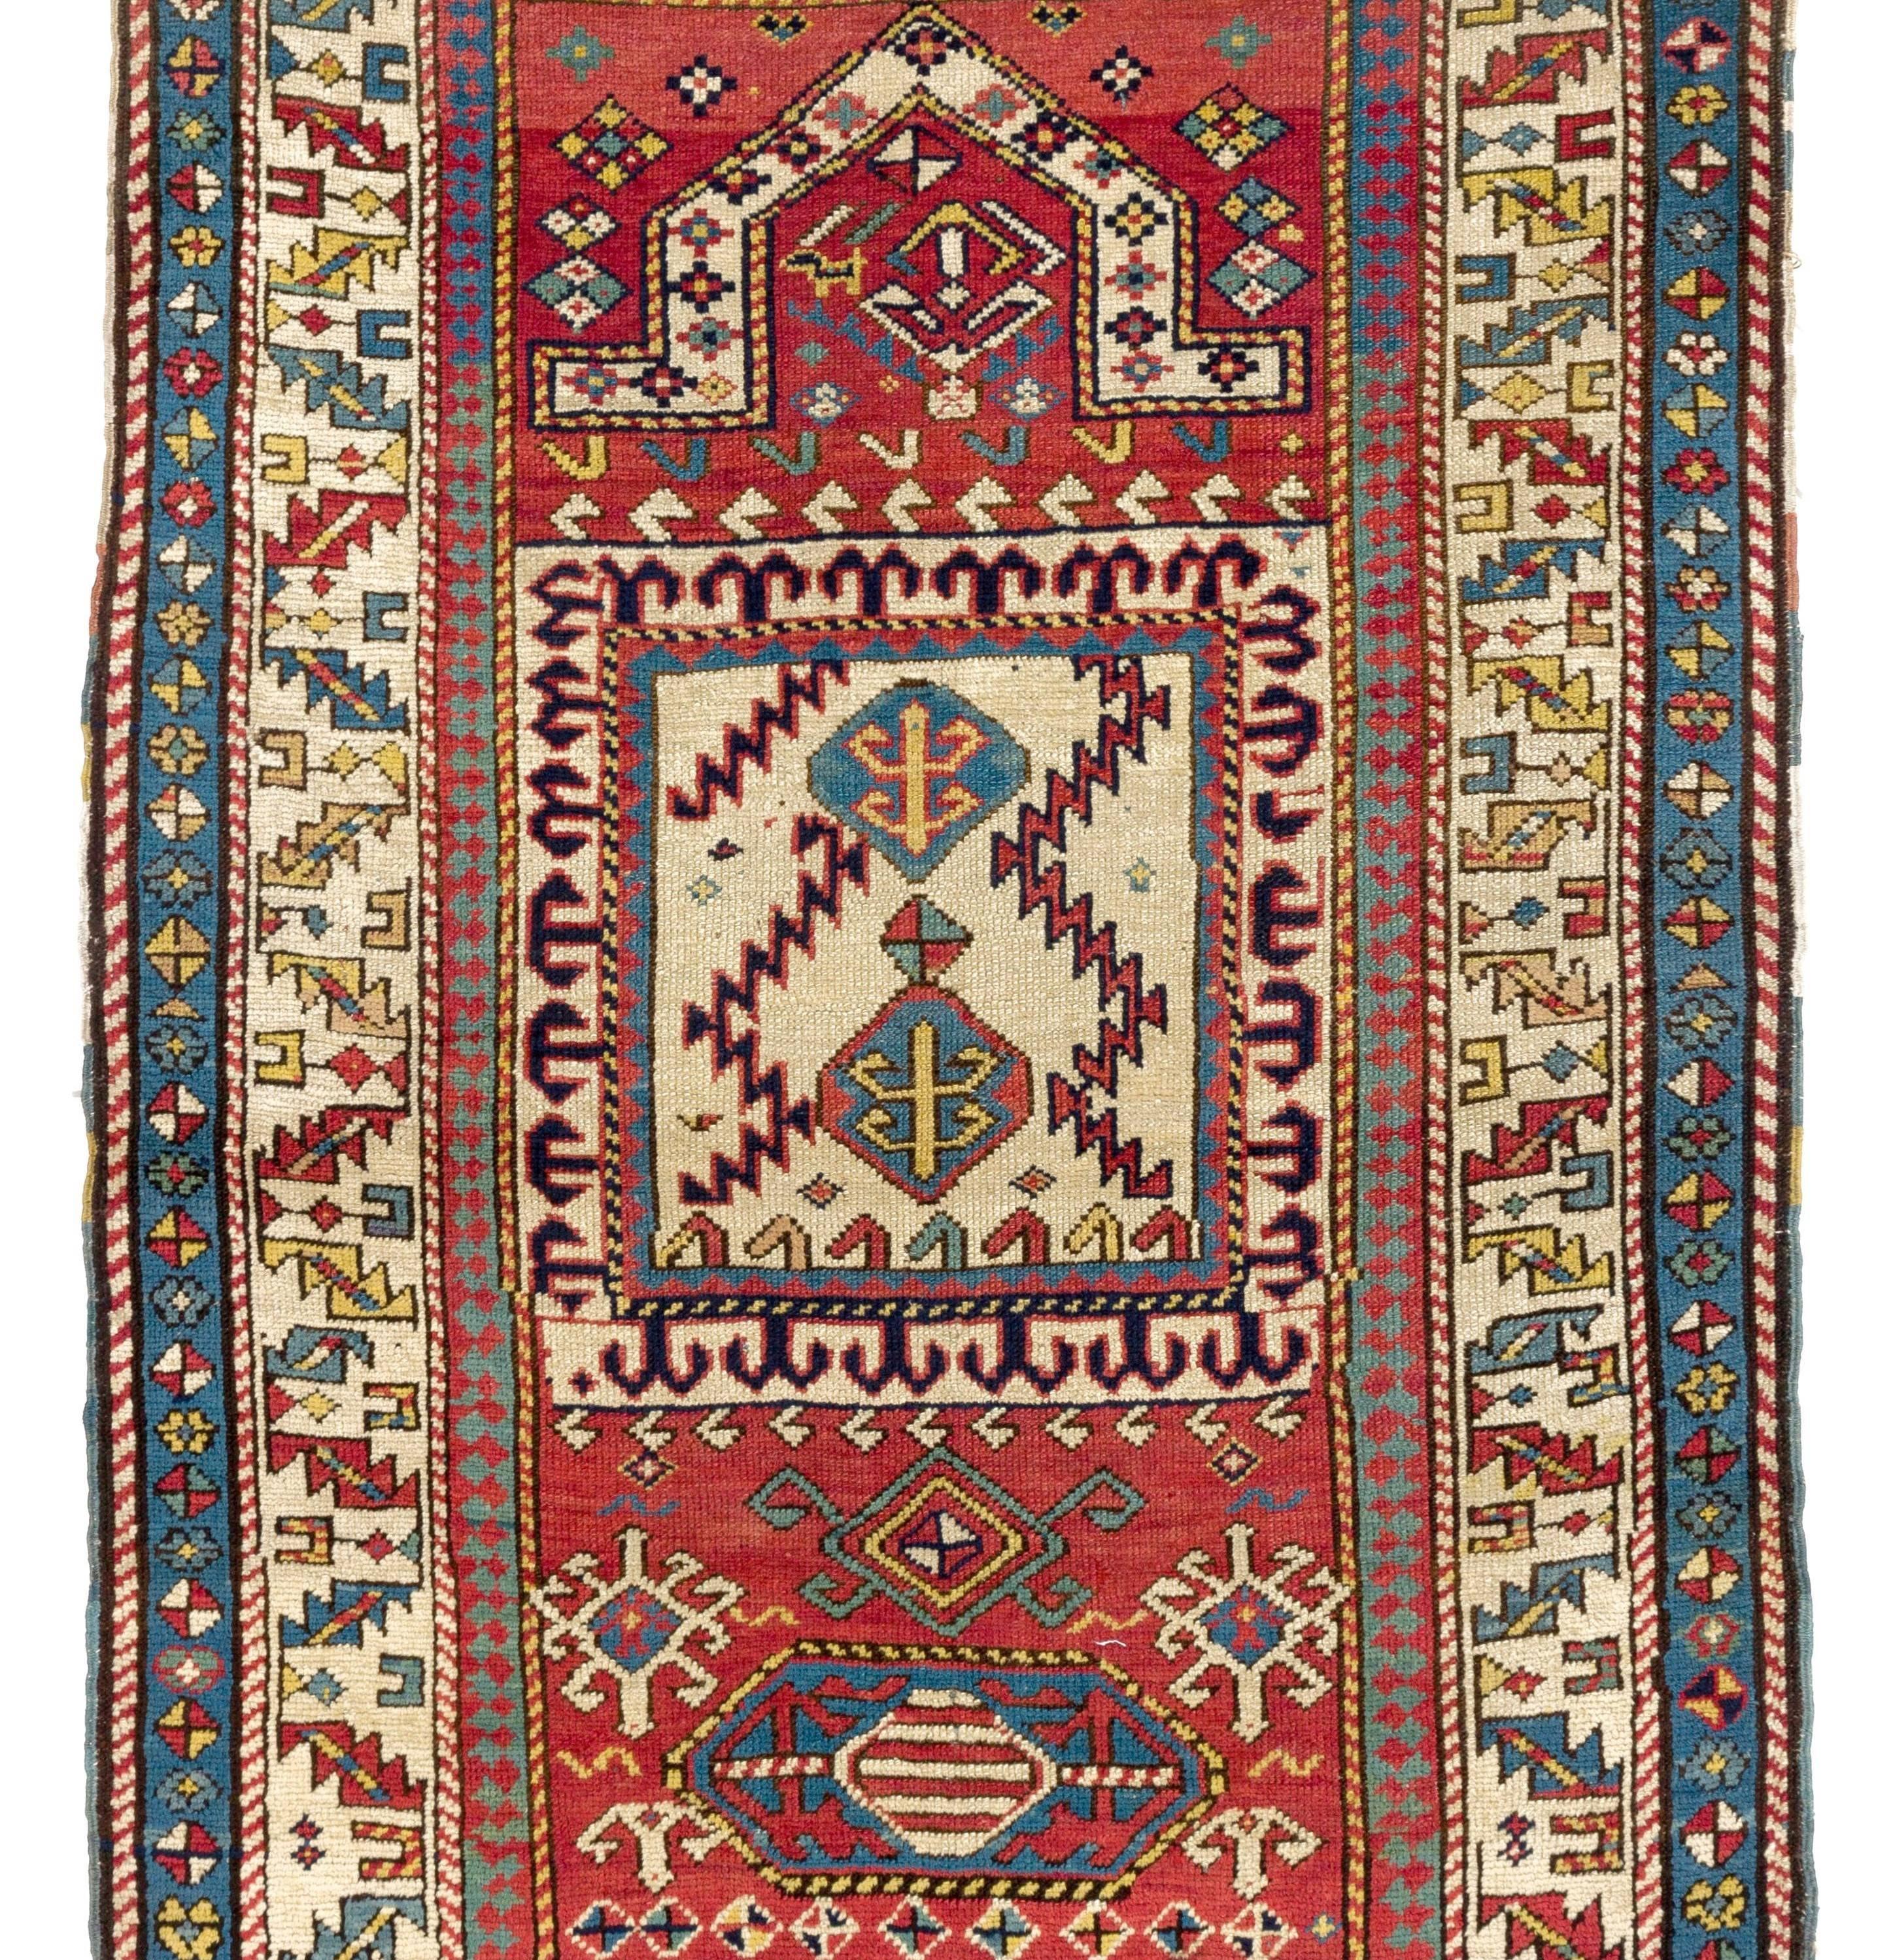 Antique Caucasian Kazak prayer rug, one of a kind, circa 1875
Very good condition, all original.